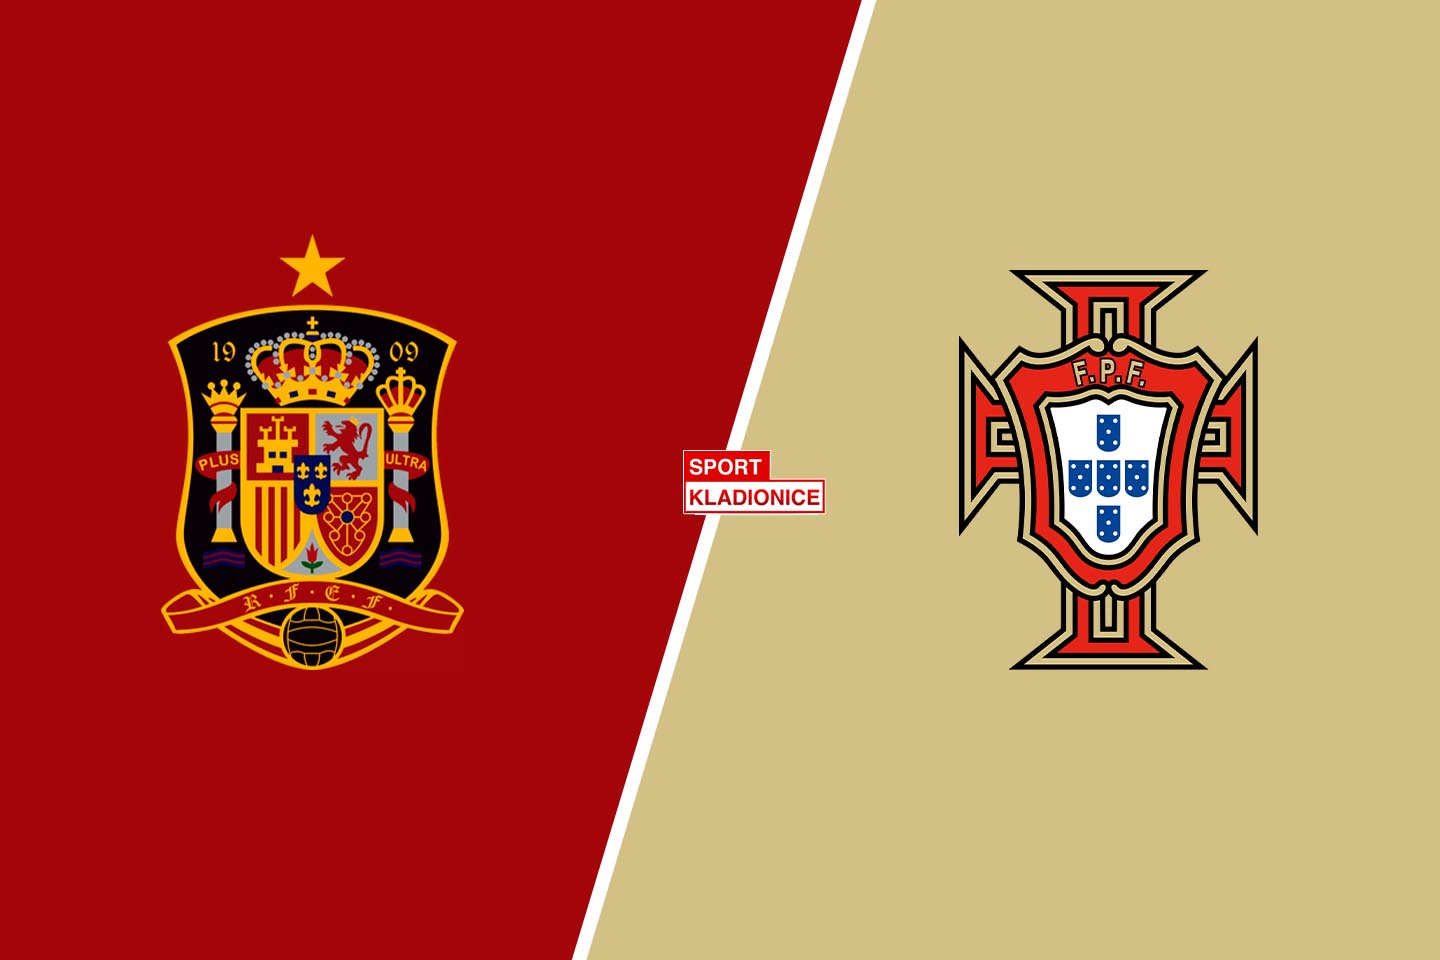 Španjolska vs. Portugal